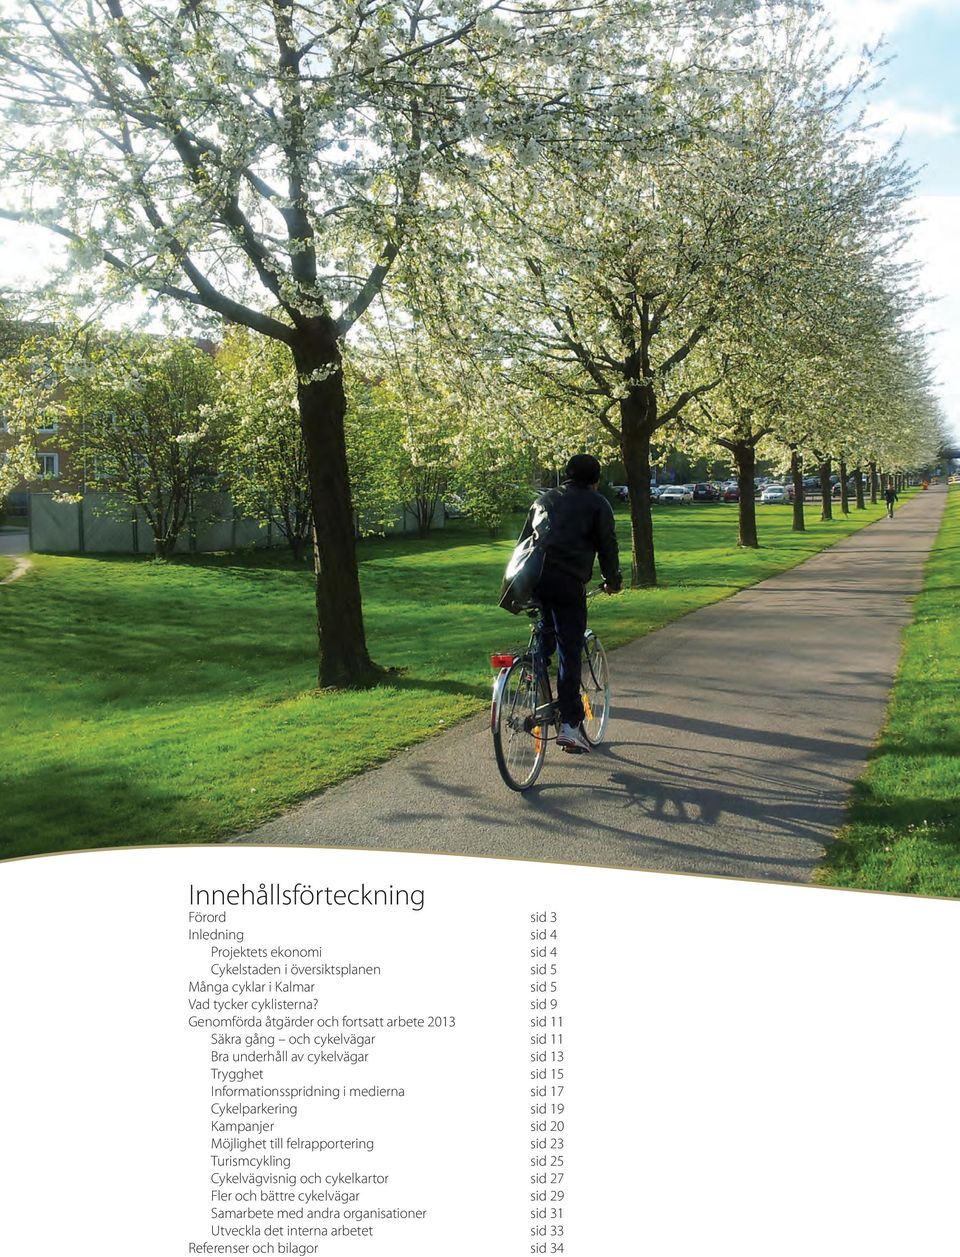 sid 9 Genomförda åtgärder och fortsatt arbete 2013 sid 11 säkra gång och cykelvägar sid 11 bra underhåll av cykelvägar sid 13 trygghet sid 15